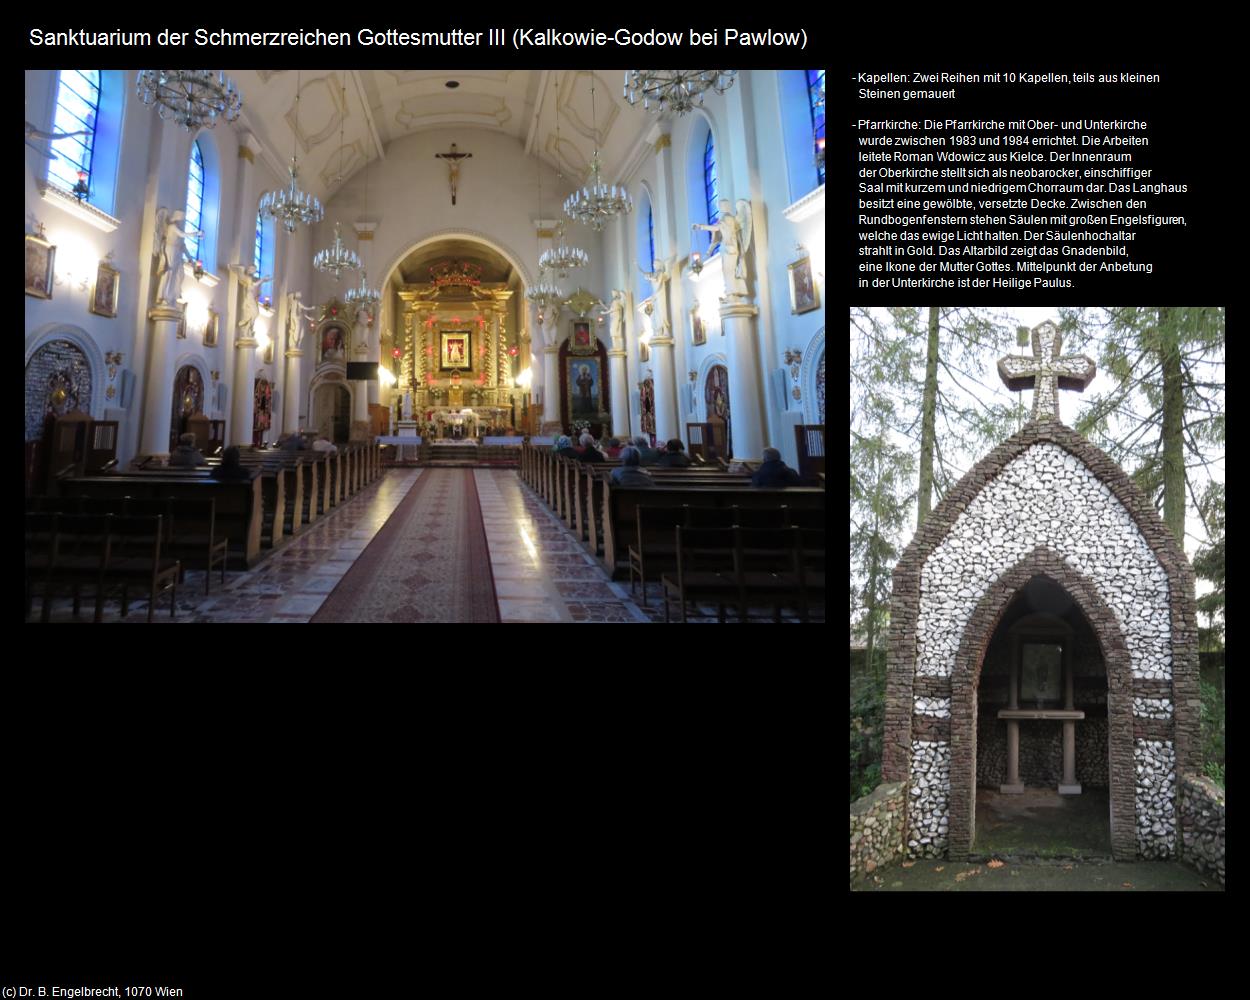 Sanktuarium der Schmerzreichen Gottesmutter III (Kalkowie-Godow bei Pawlow) in POLEN-Galizien